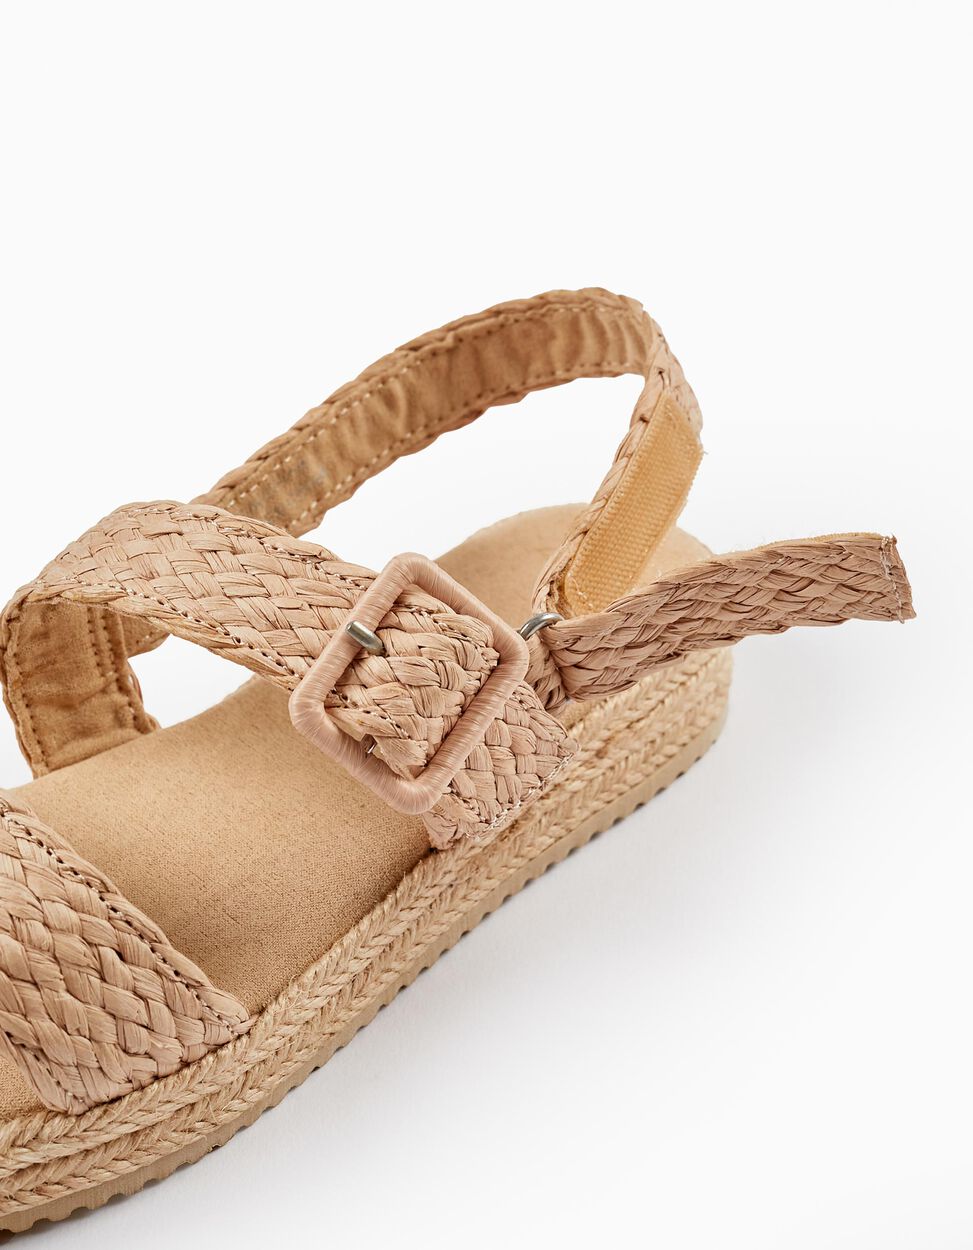 Buy Online Jute Sandals for Girls, Beige